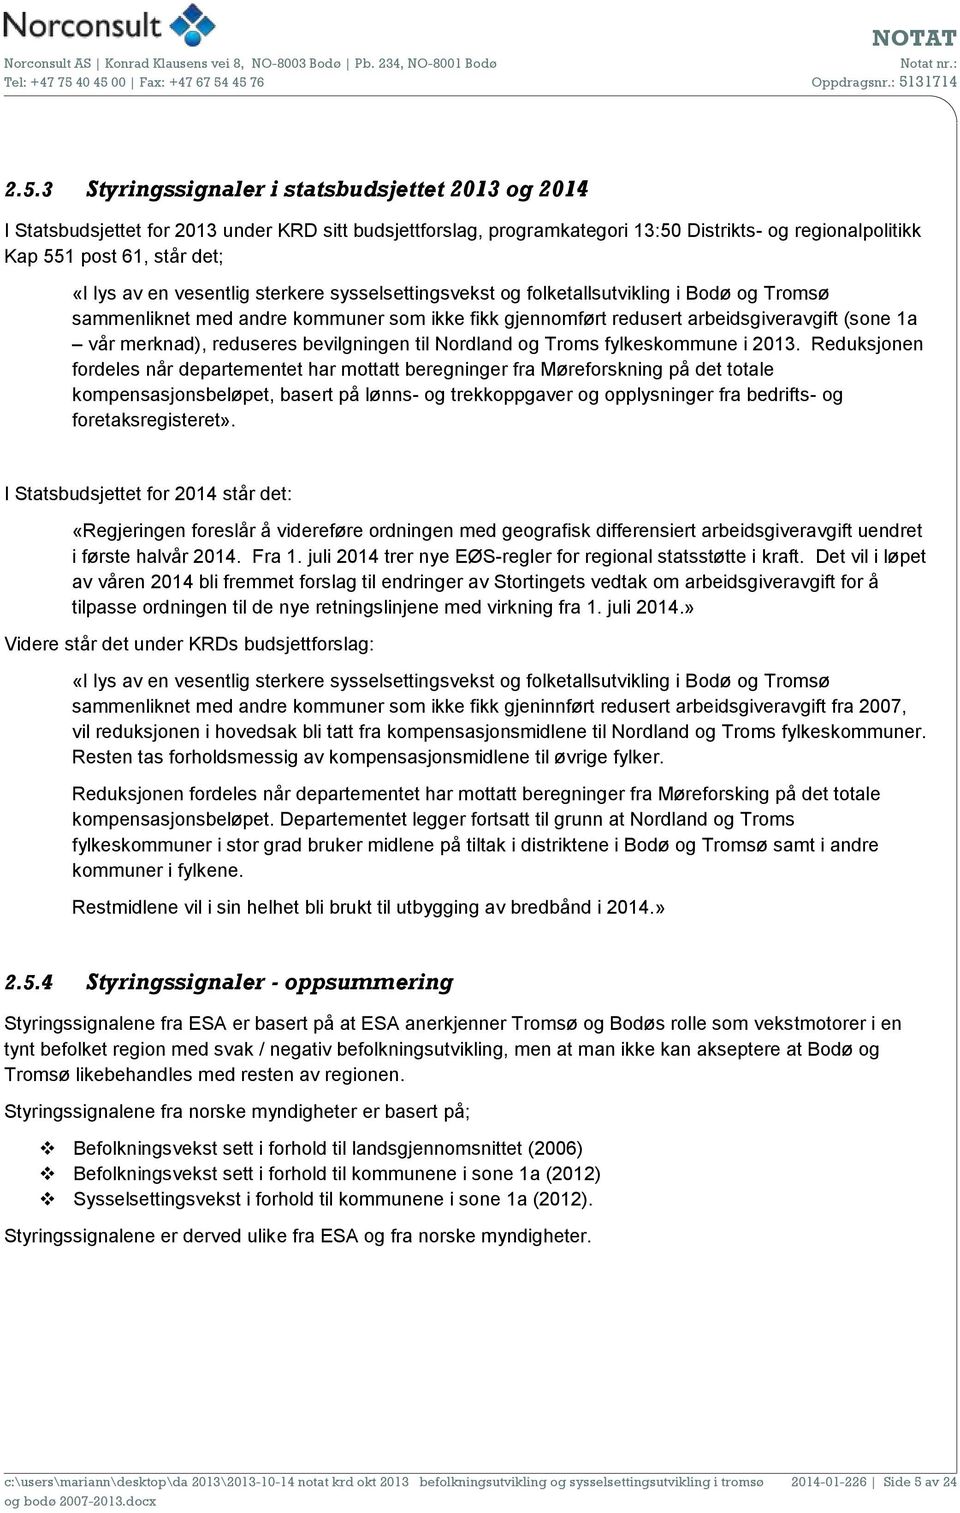 reduseres bevilgningen til Nordland og Troms fylkeskommune i 2013.